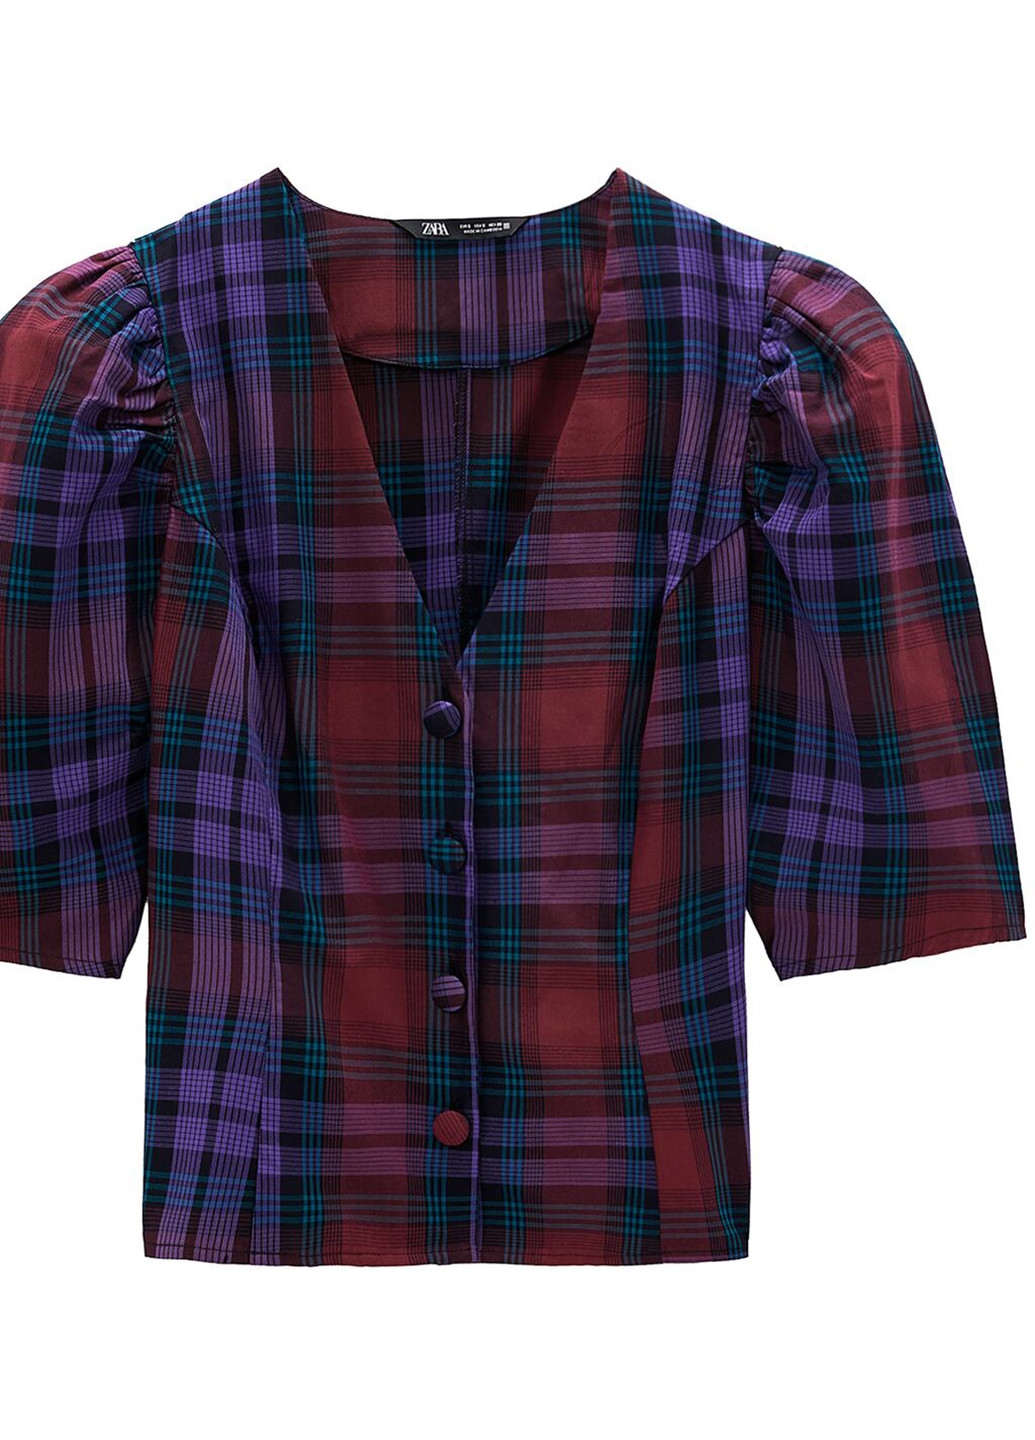 Комбинированная демисезонная блуза Zara